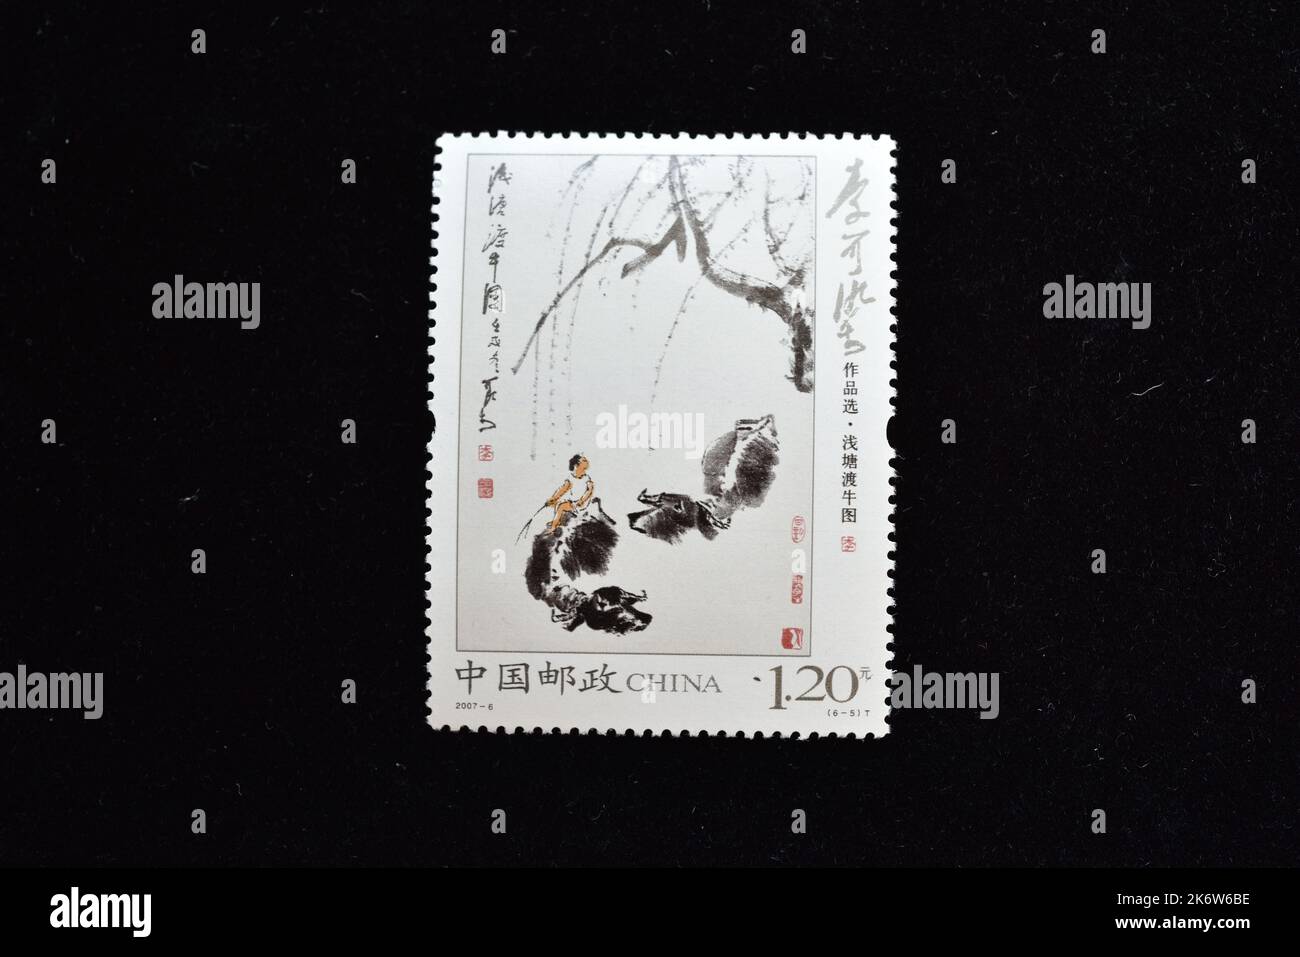 CHINA - CIRCA 2007: A stamp printed in China shows 2007-6 Selected Paintings of Li Keran, circa 2007., circa 2007 Stock Photo